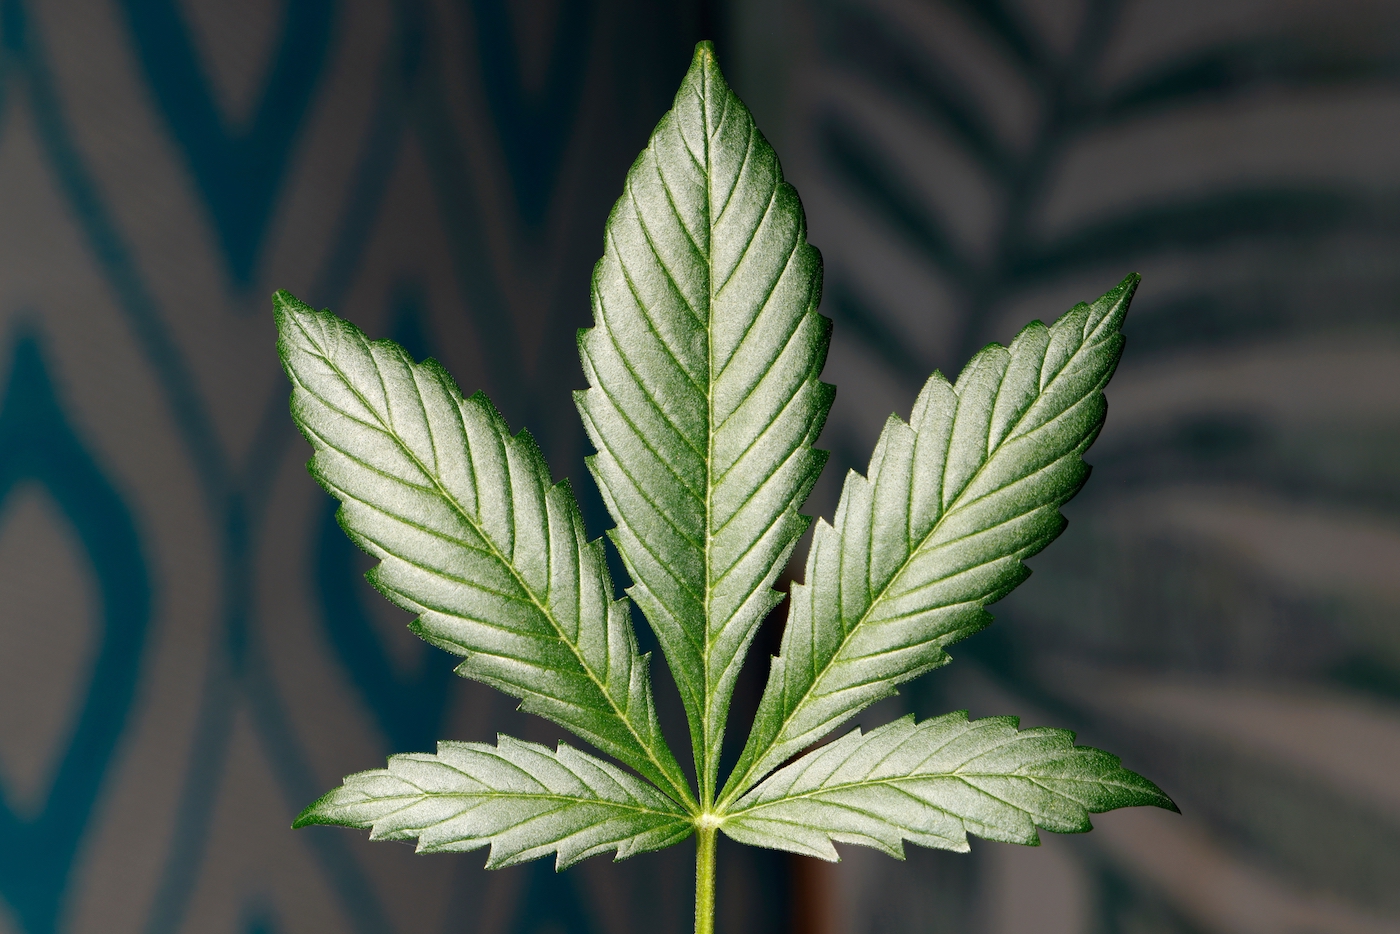 Trimmed cannabis fan leaf